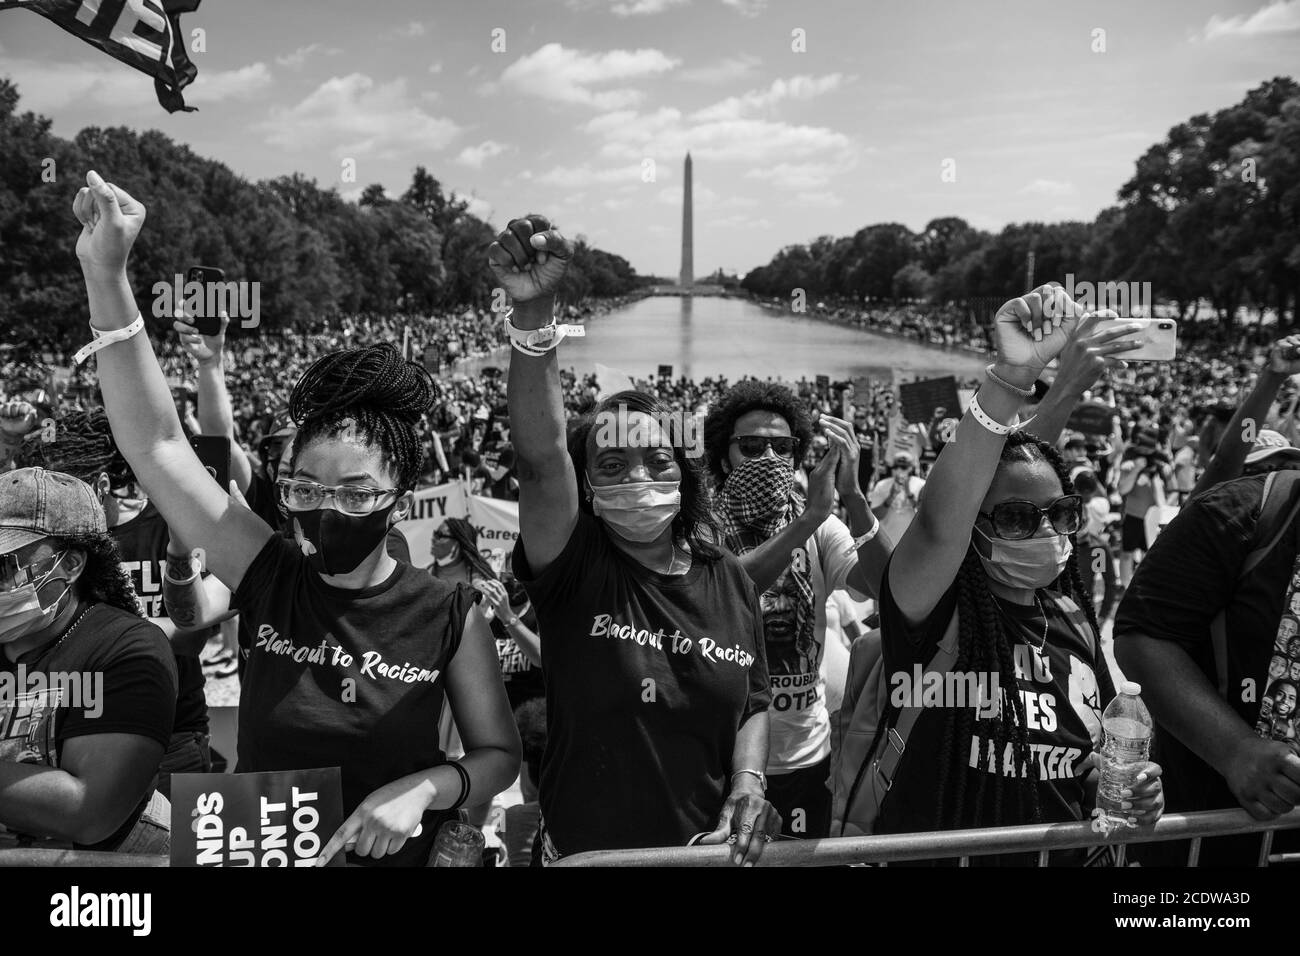 Washington, DC, Stati Uniti. 28 Agosto 2020. WASHINGTON D.C. - AGOSTO 28: I manifestanti manifestano fuori dal Lincoln Memorial come parte del "Commitment March, Get Your Knee off our necks" nel 57° anniversario del discorso "i have A Dream" di Martin Luther King durante la marcia su Washington il 28 agosto 2020 a Washington, DC (Foto di Chris Tuite/ImageSPACE) Credit: Imagespace/Alamy Live News Foto Stock